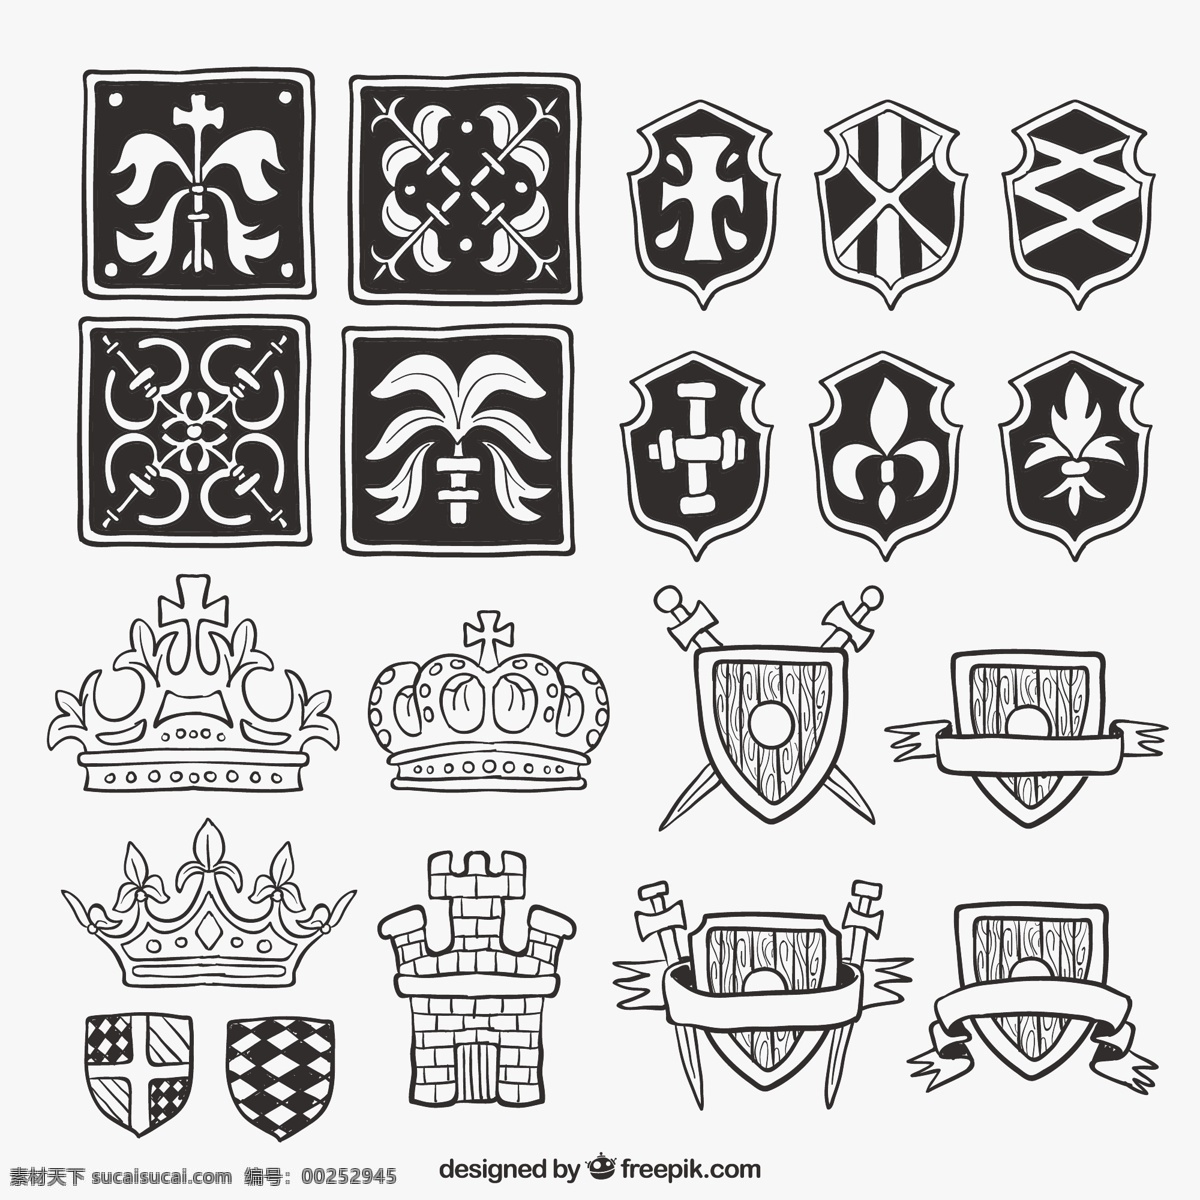 手 拉 护 盾 中世纪 元素 一方面 皇冠 徽章 盾牌 手绘 安全 交叉 装饰 绘画 会徽 象征 中世纪纹章 纹章的保护 包 白色